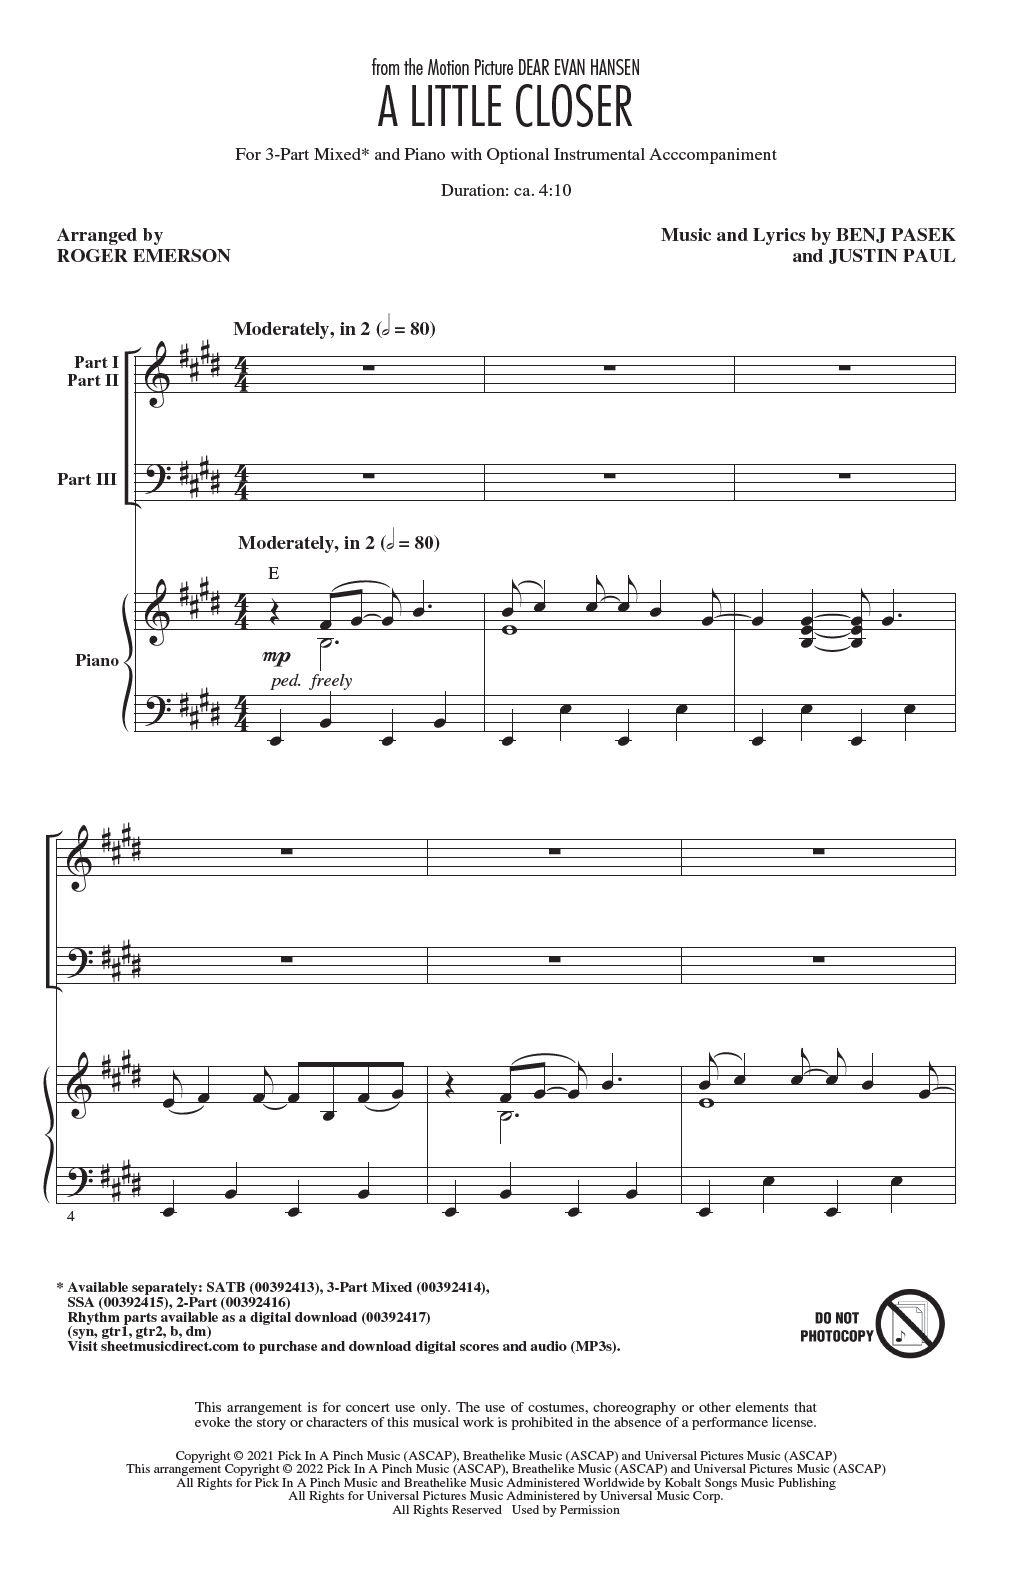 Pasek & Paul A Little Closer (from Dear Evan Hansen) (arr. Roger Emerson) sheet music notes and chords arranged for 2-Part Choir